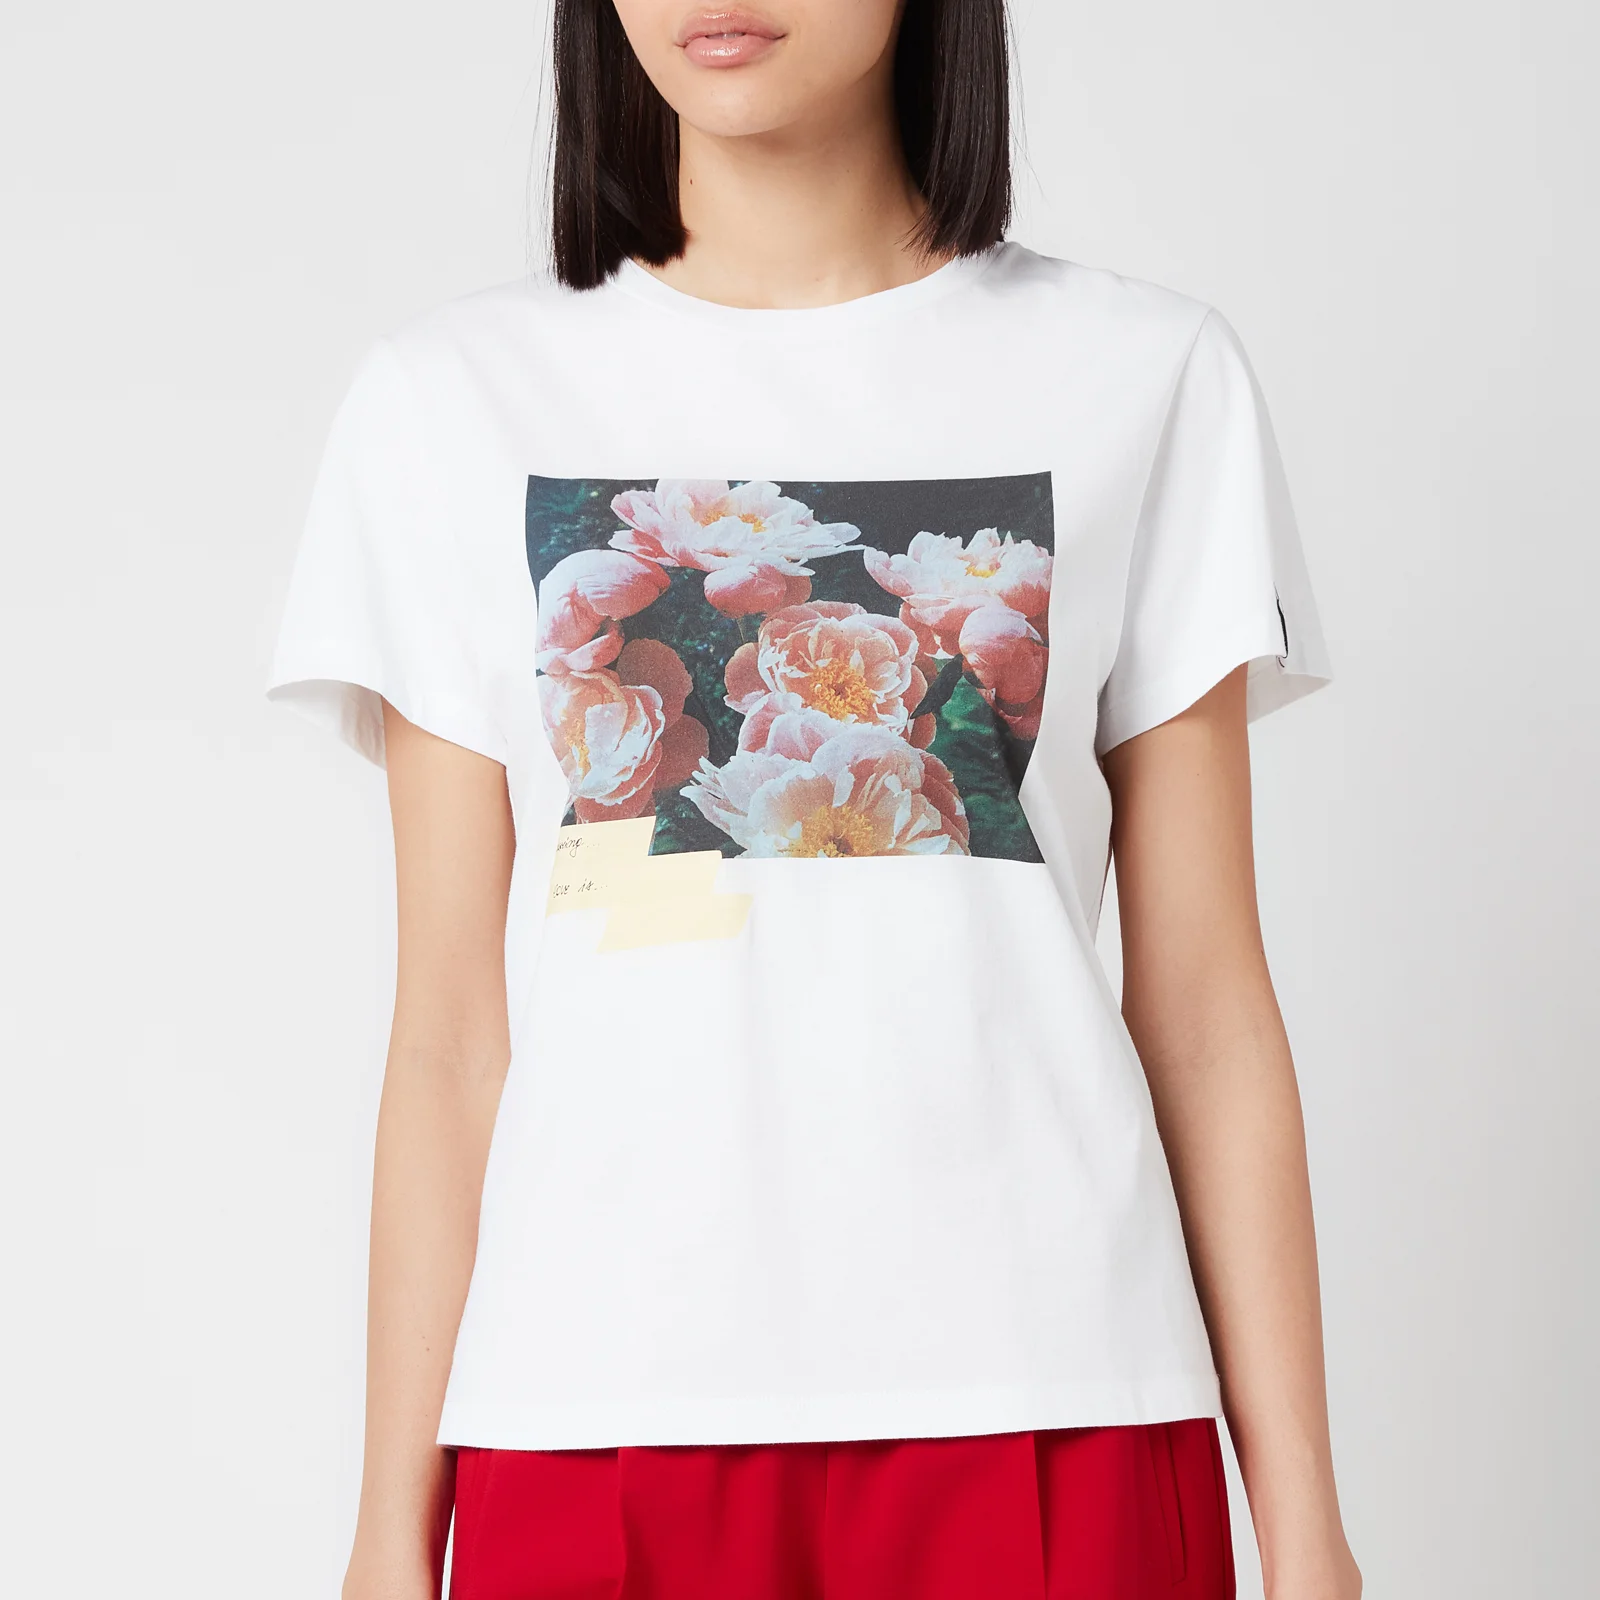 Golden Goose Women's Ania Regular S/S Flowers Postcard/Digital/Tape/D.I.Y. T-Shirt - White/Multicolour Image 1